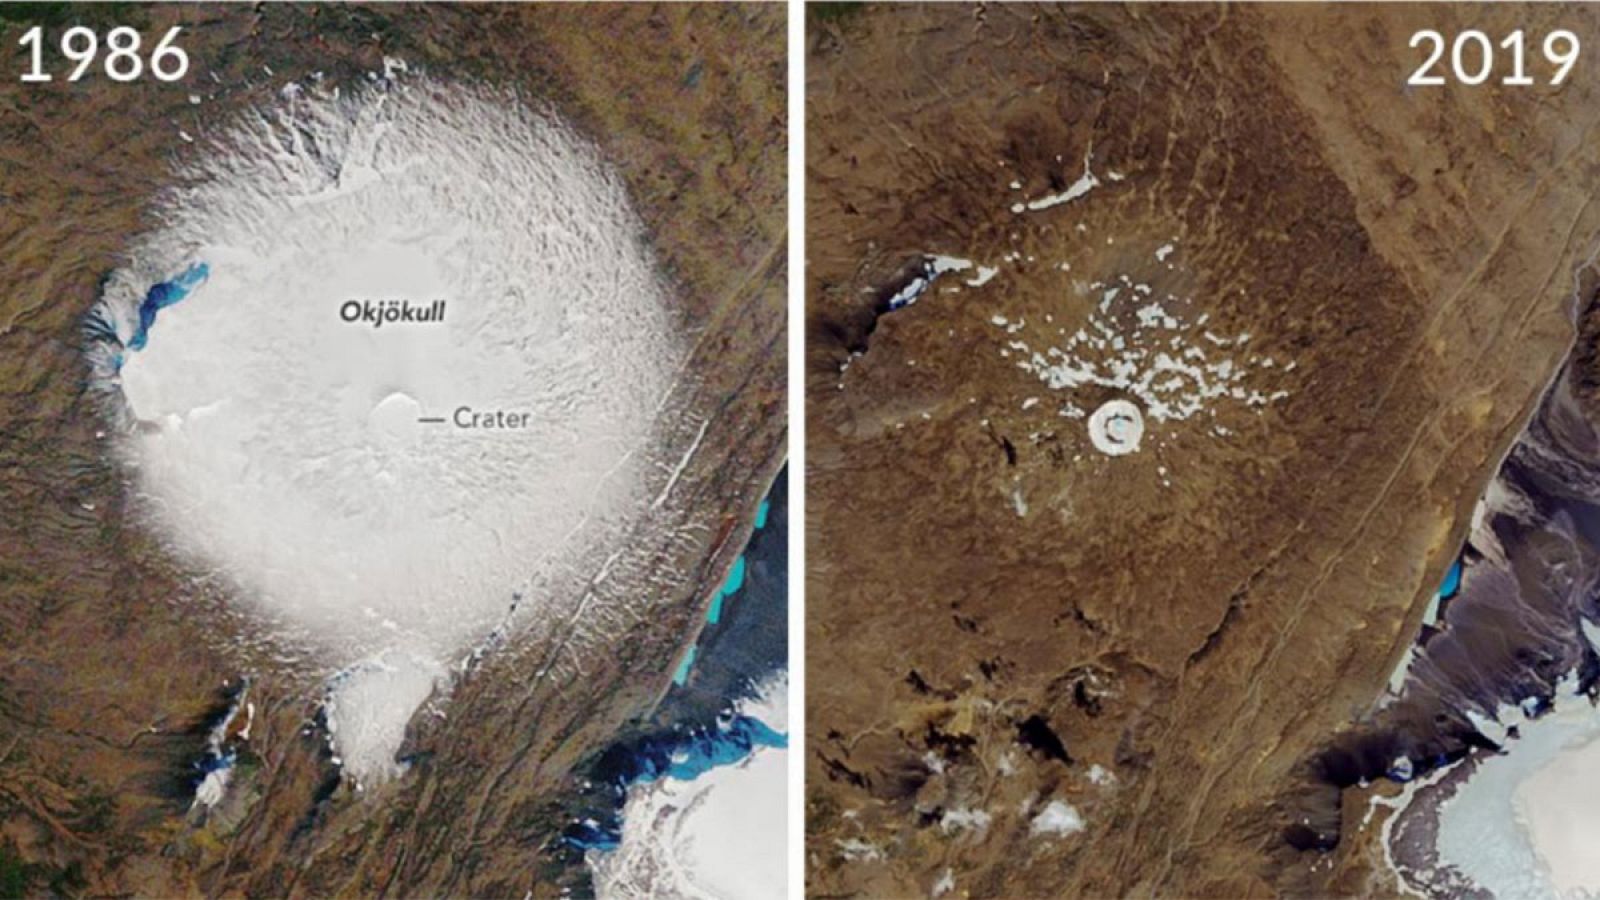 Comparación de las superficies del Okjökull, entre 1986 y 2019.